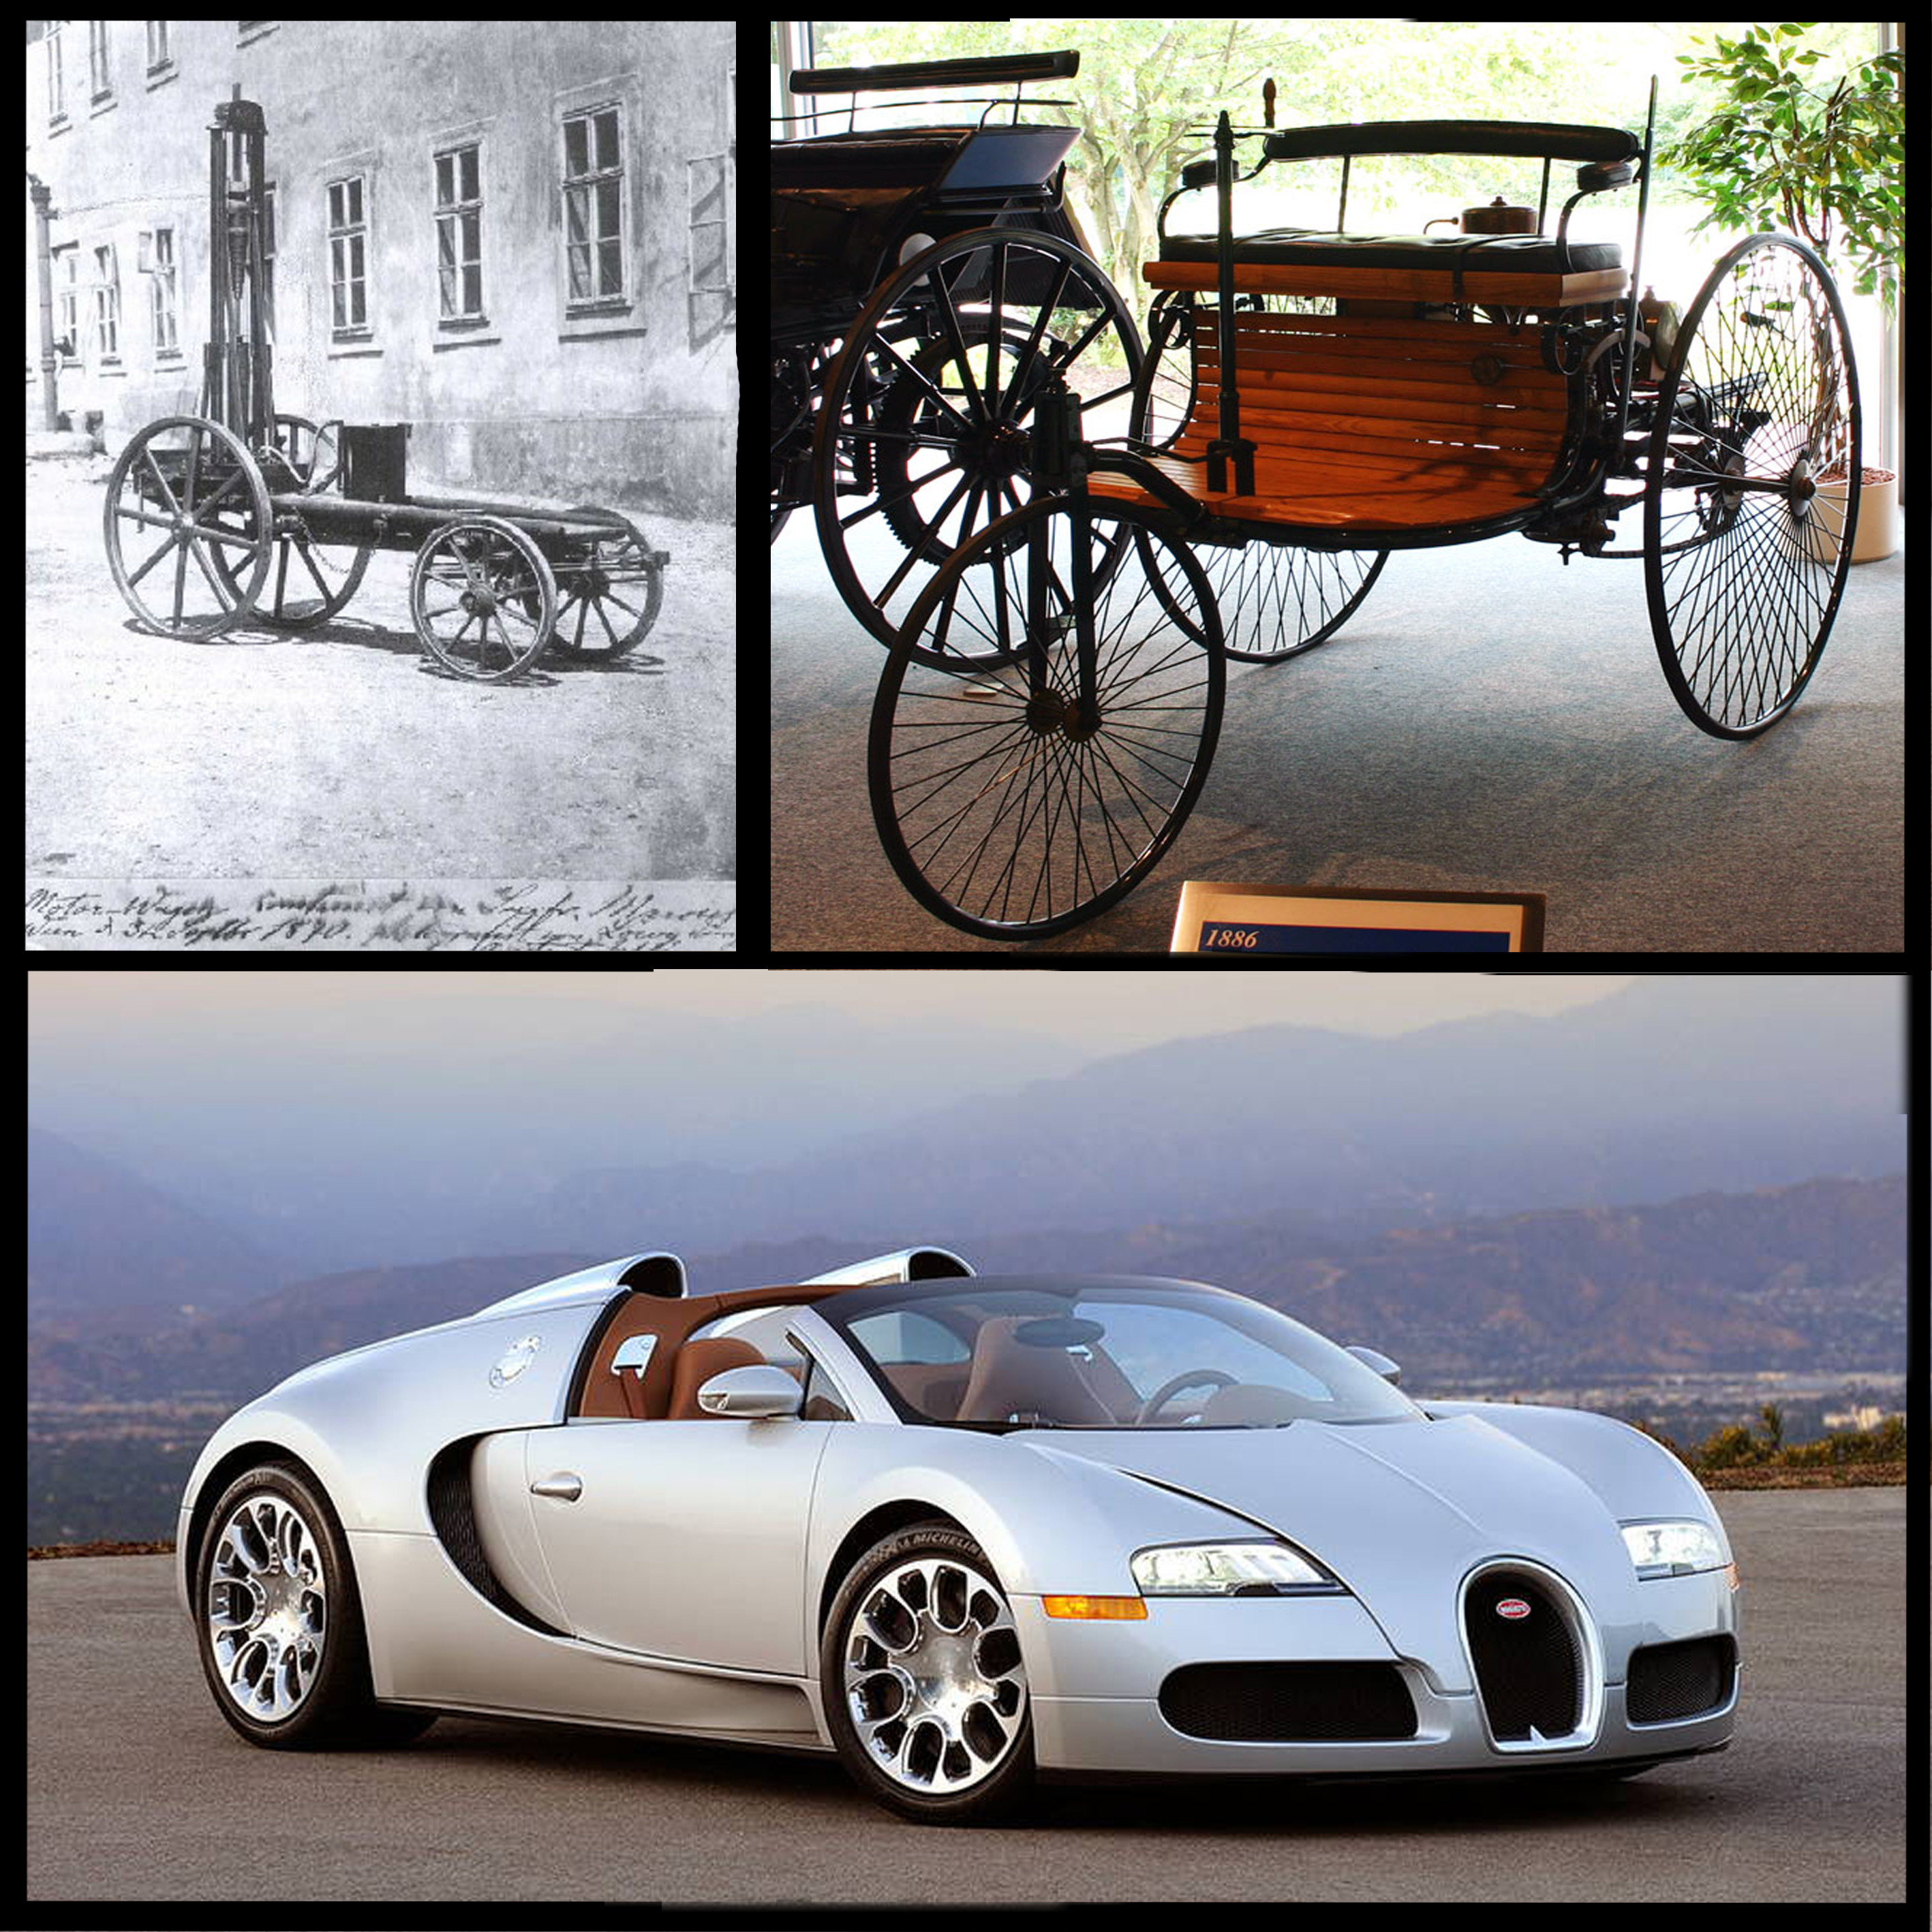 Предмет прошлого времени. Машины раньше. Какие раньше были машины. Сравнение старой и новой машины. Современный и старый автомобиль.